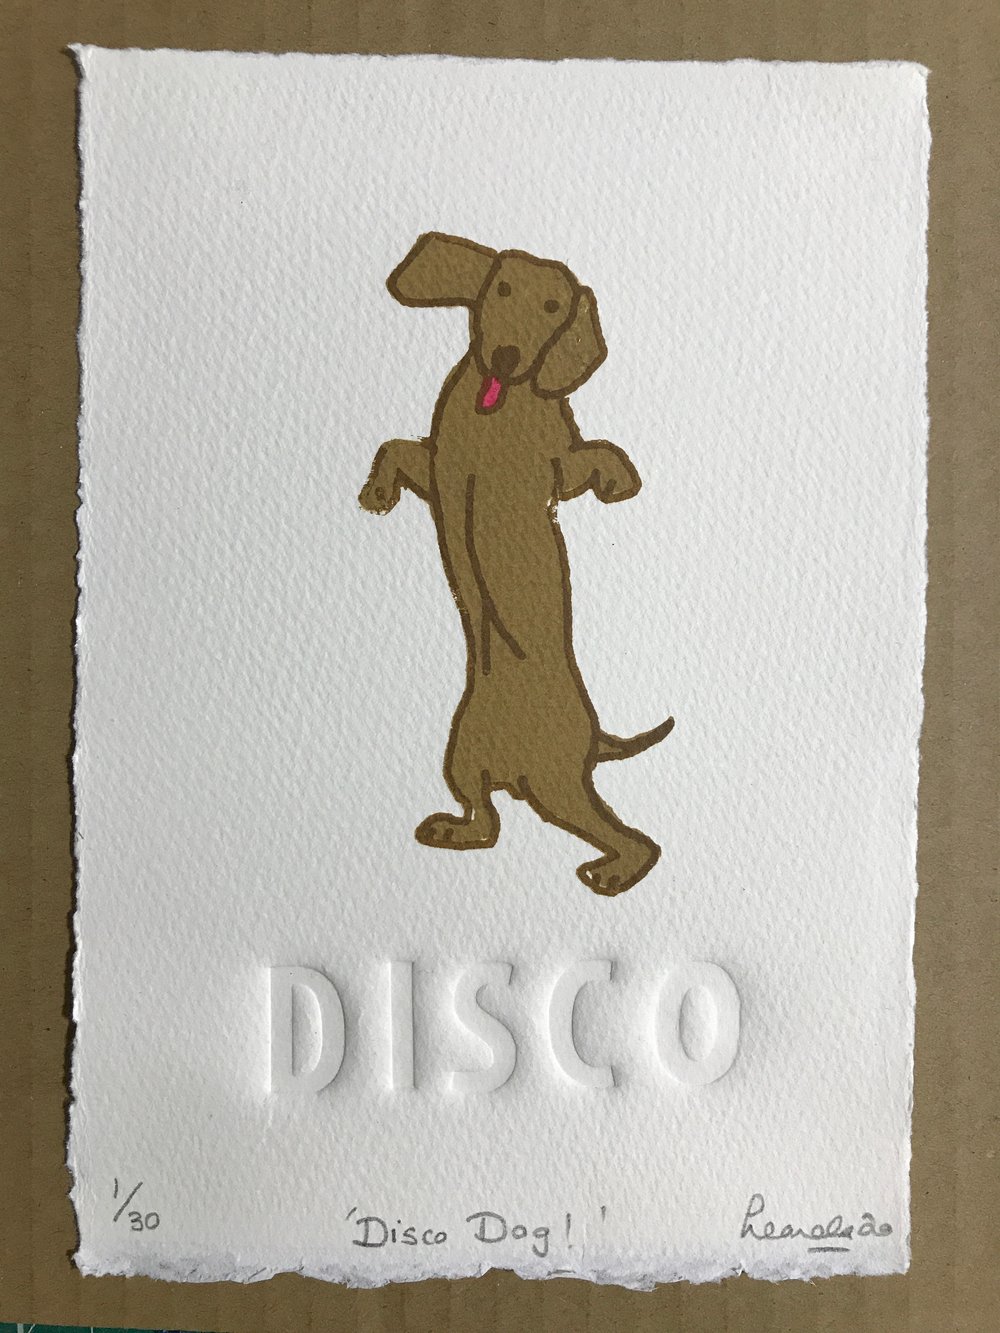 Image of Disco Dog!